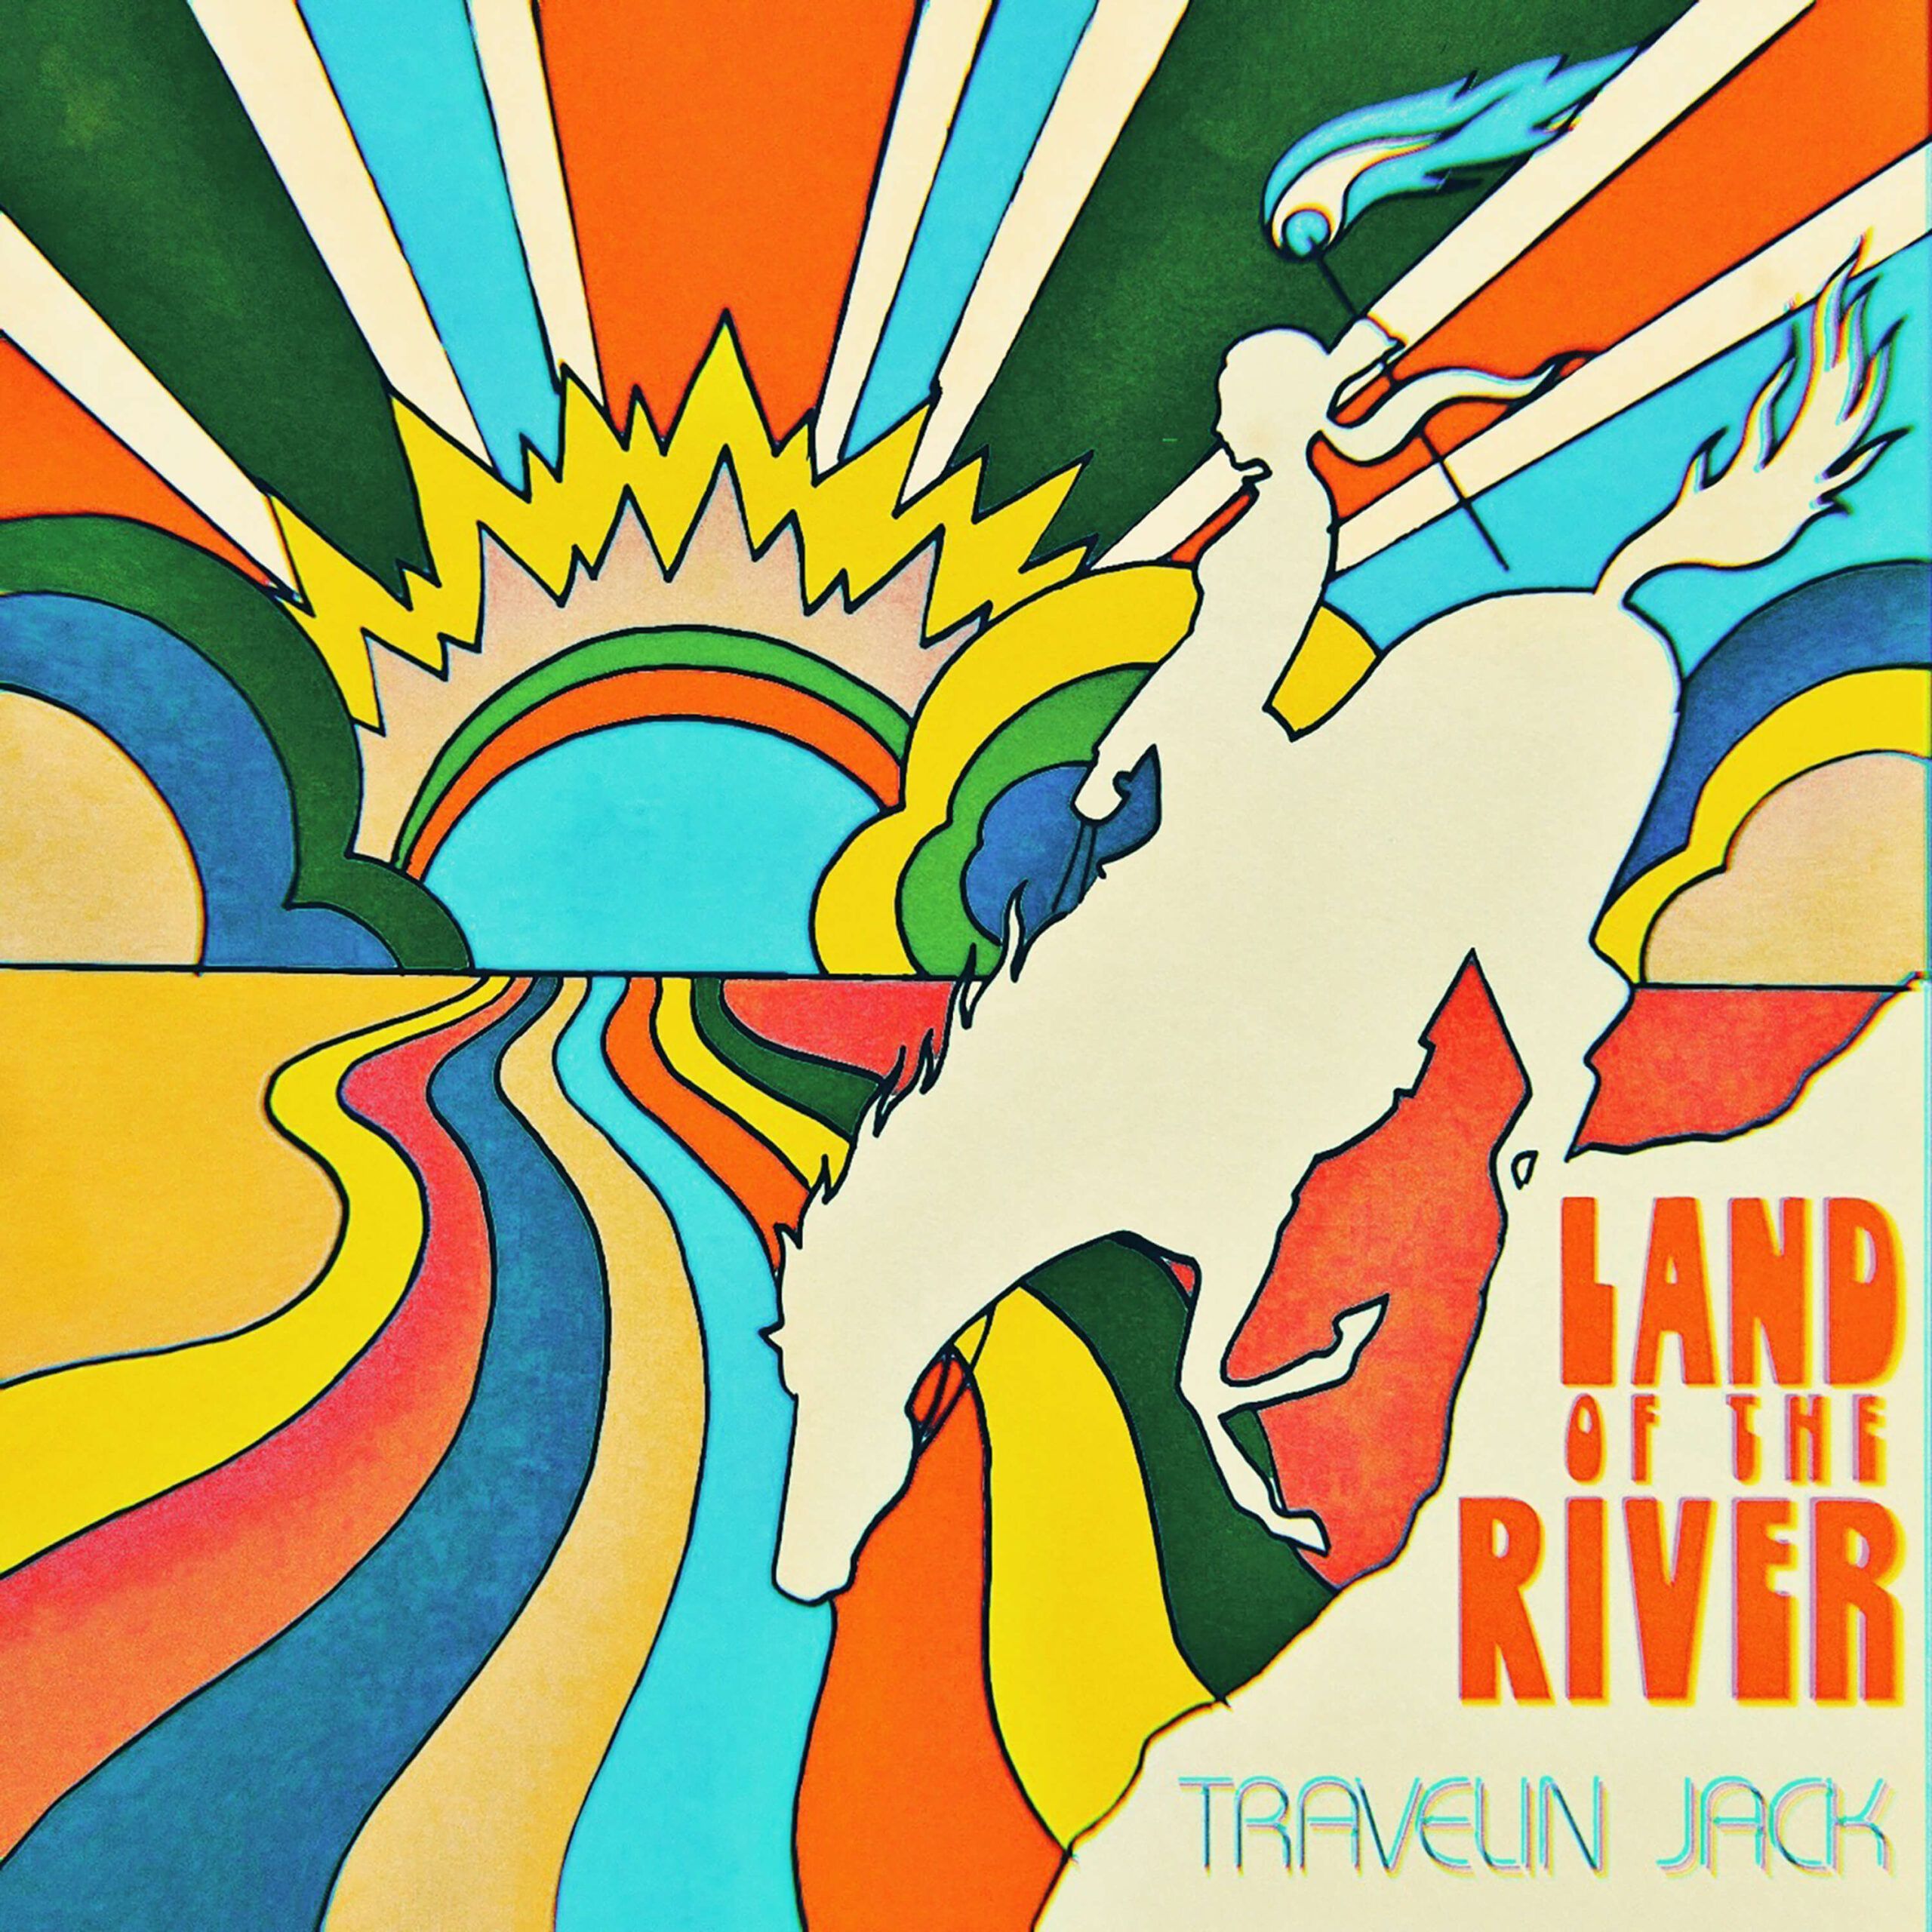 'Land Of The River'-Visualizer veröffentlicht